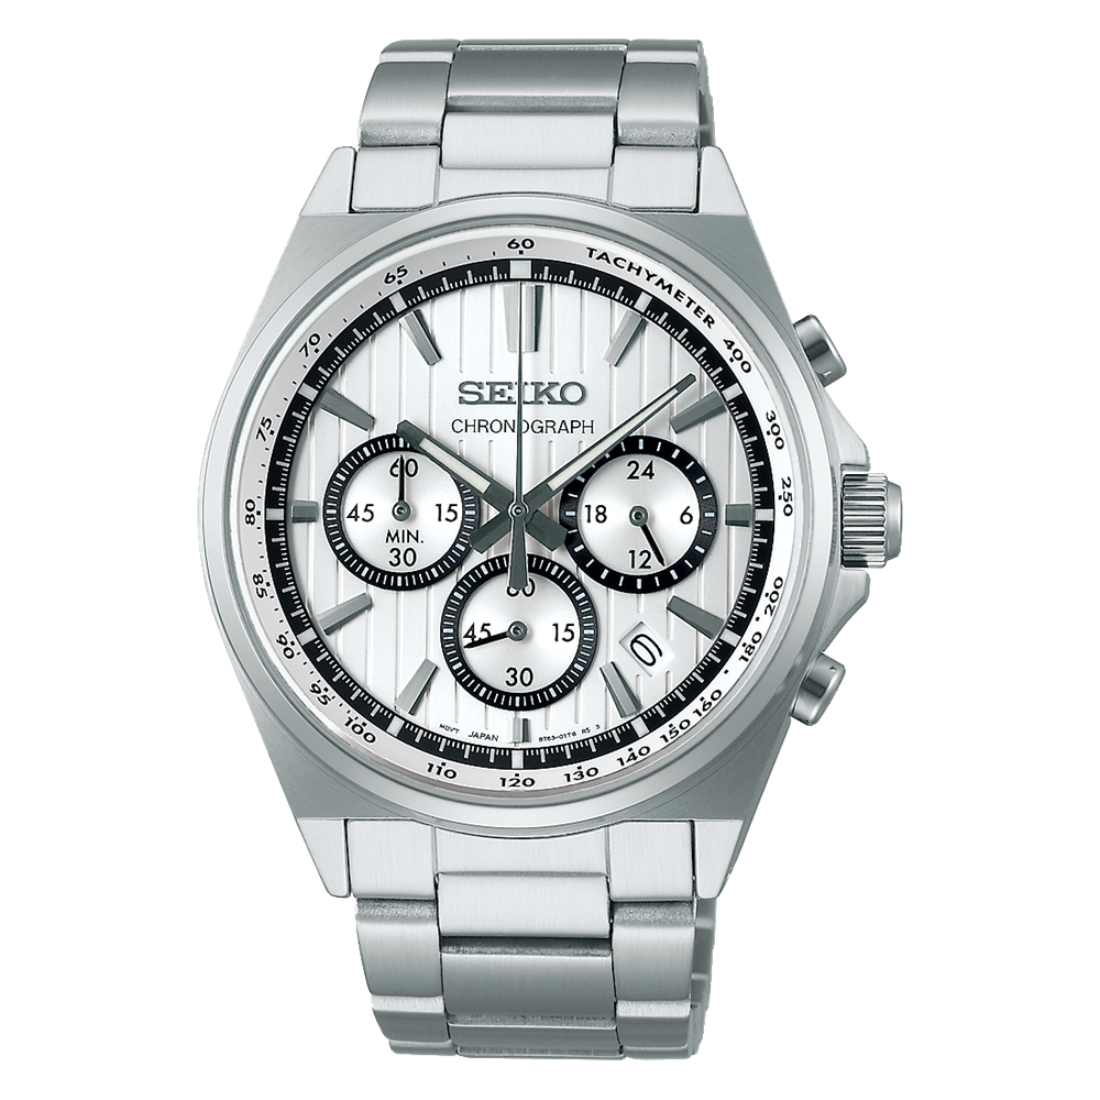 Seiko Selection S-Series SBTR031J SBTR031 Silver Dial Chronograph Watch (PRE-ORDER)